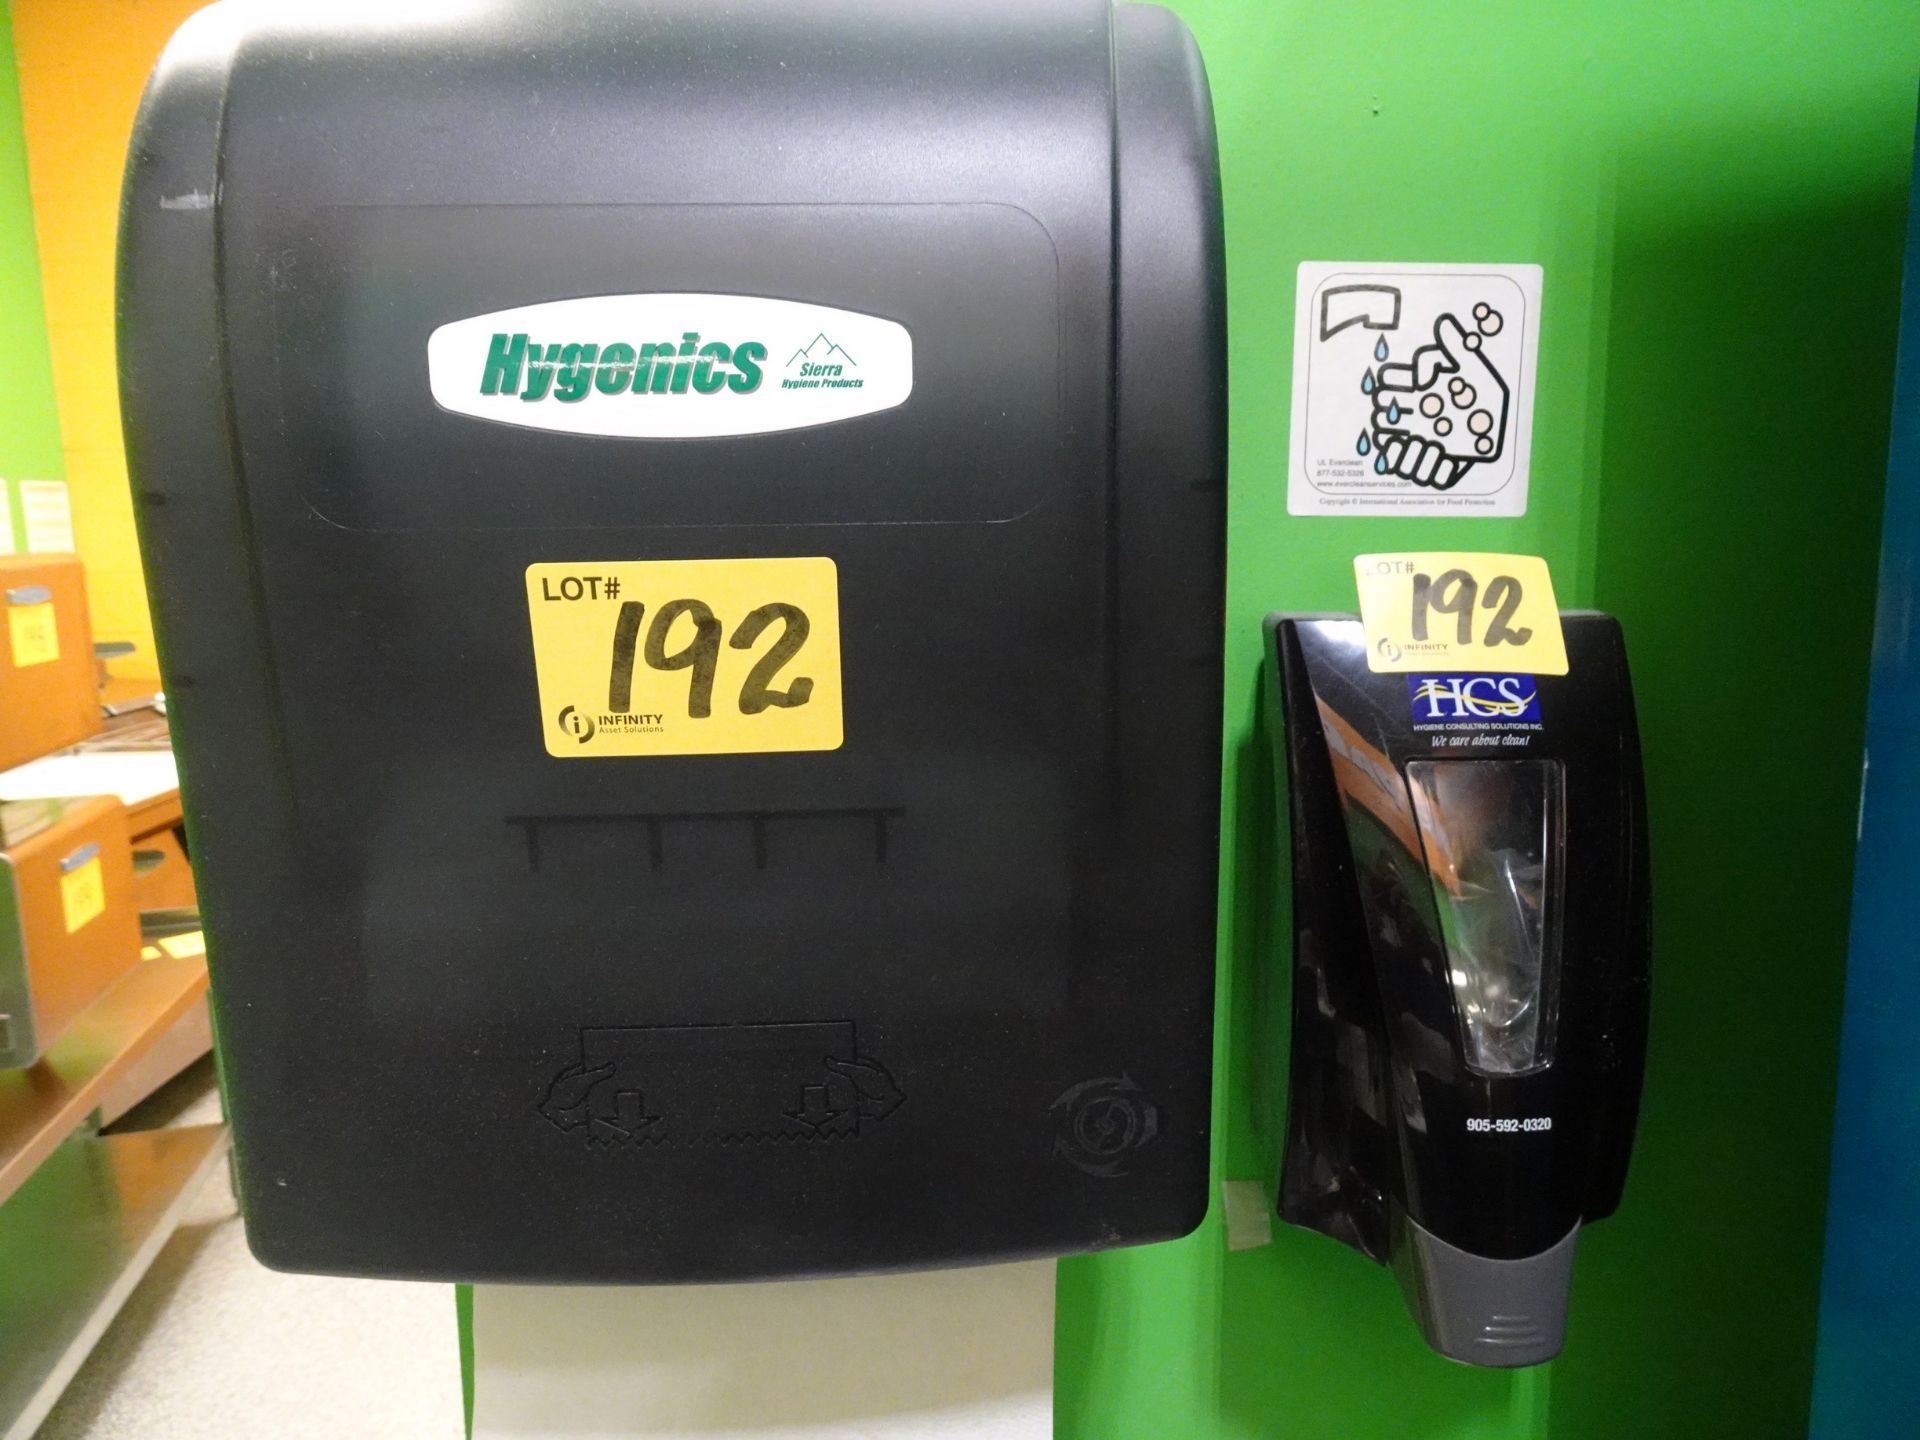 Hygenics paper towel dispenser w/ HCS soap dispenser